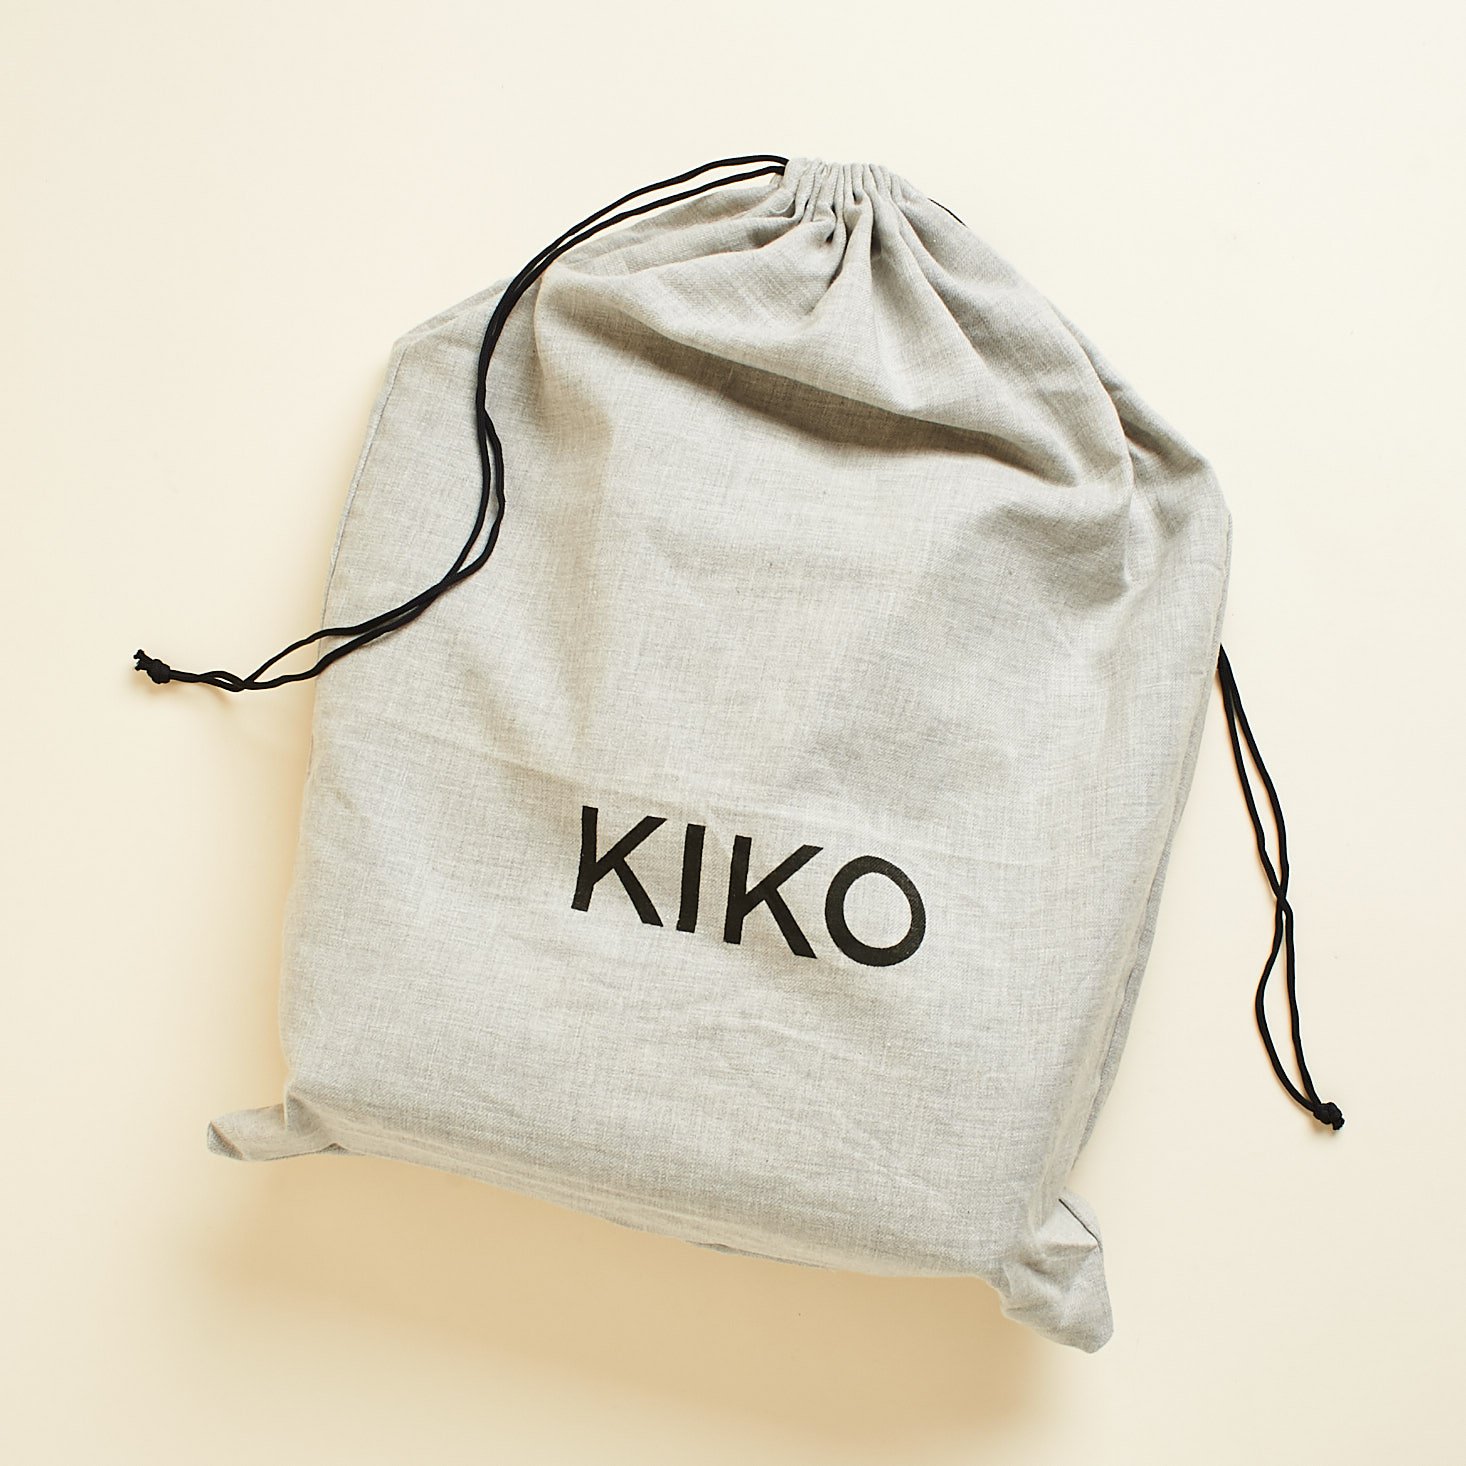 kiko branded dust bag